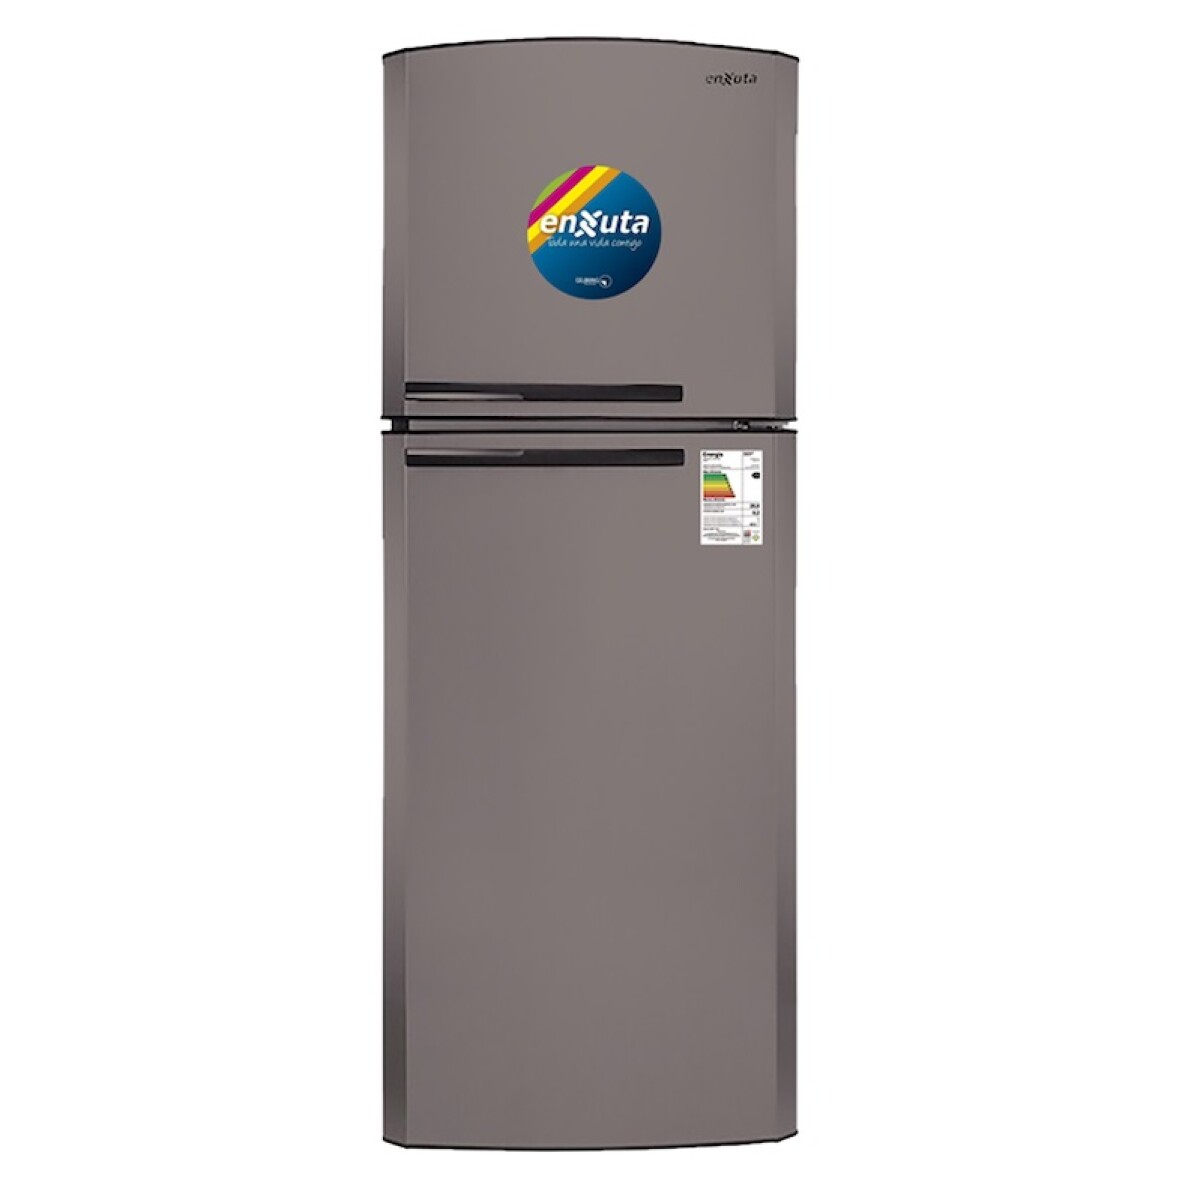 Refrigerador Enxuta Renx24300i 